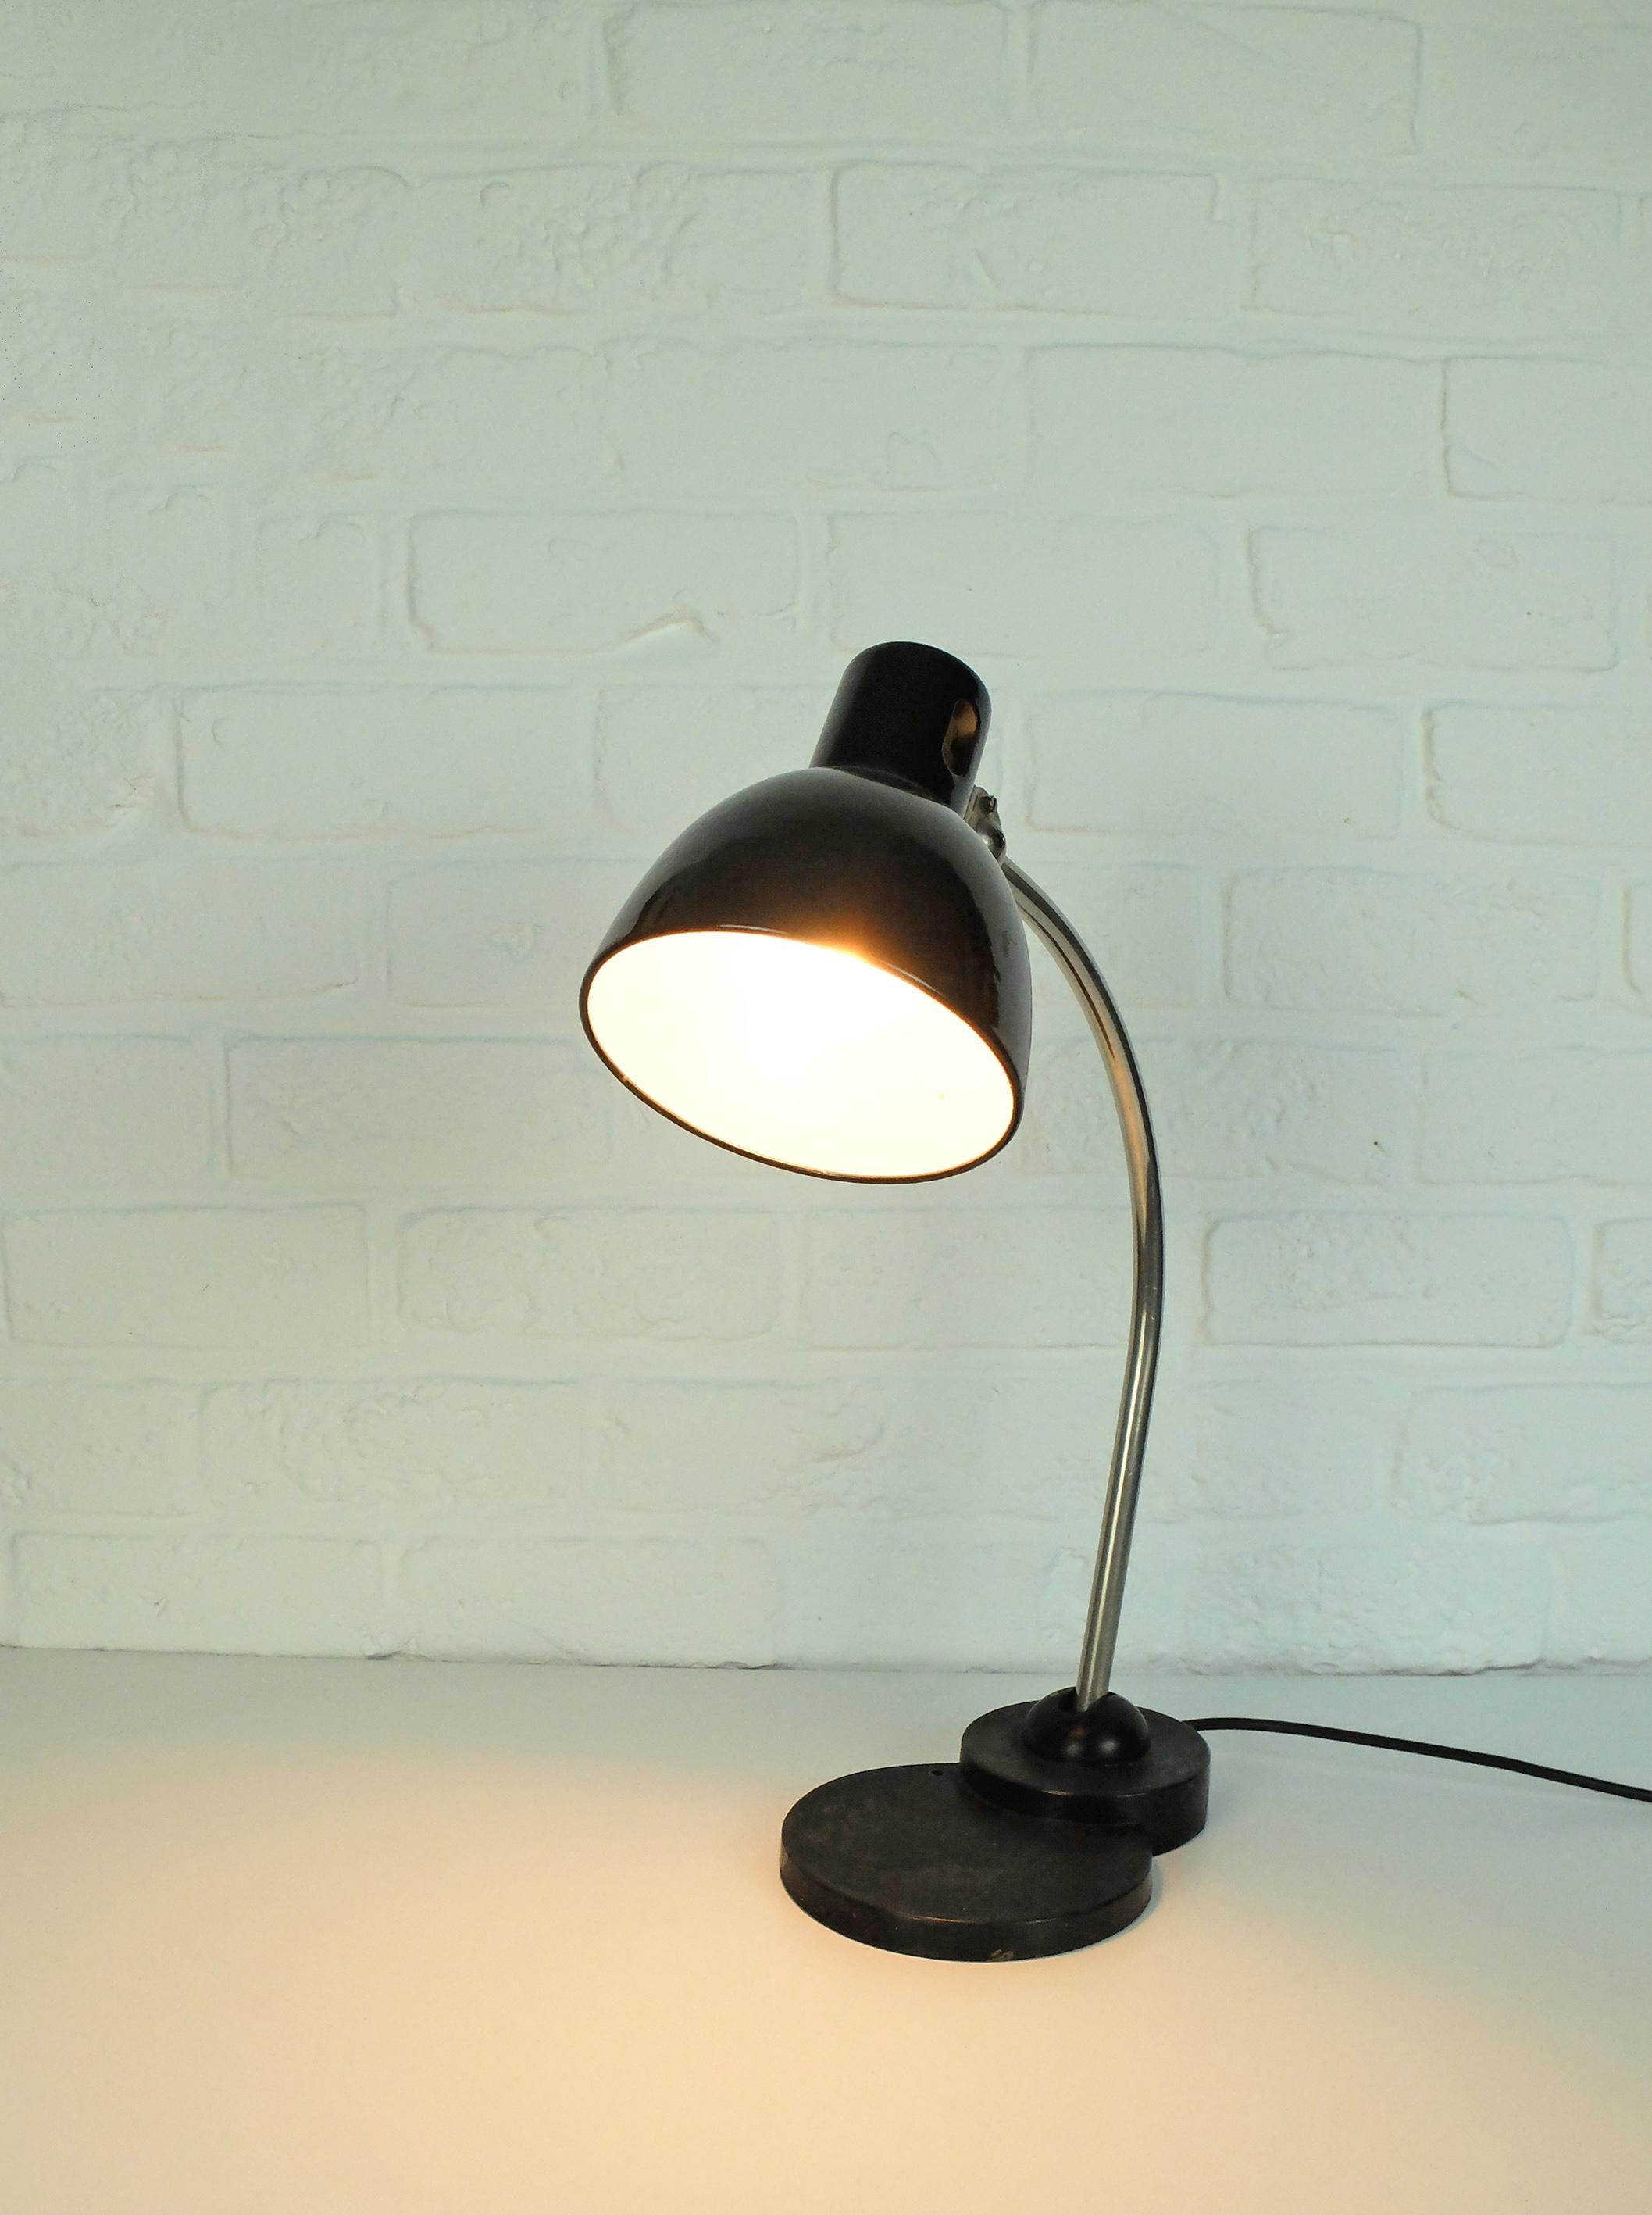 Lampe de table ou de bureau Zirax fabriquée par Dr. Ing. Schneider & Co, Francfort. Lampe typique du Bauhaus des années 1930.

Dr. Schneider & Co a été fondée en 1911 à Francfort-sur-le-Main par les frères John J. Schneider, Carl August Schneider et